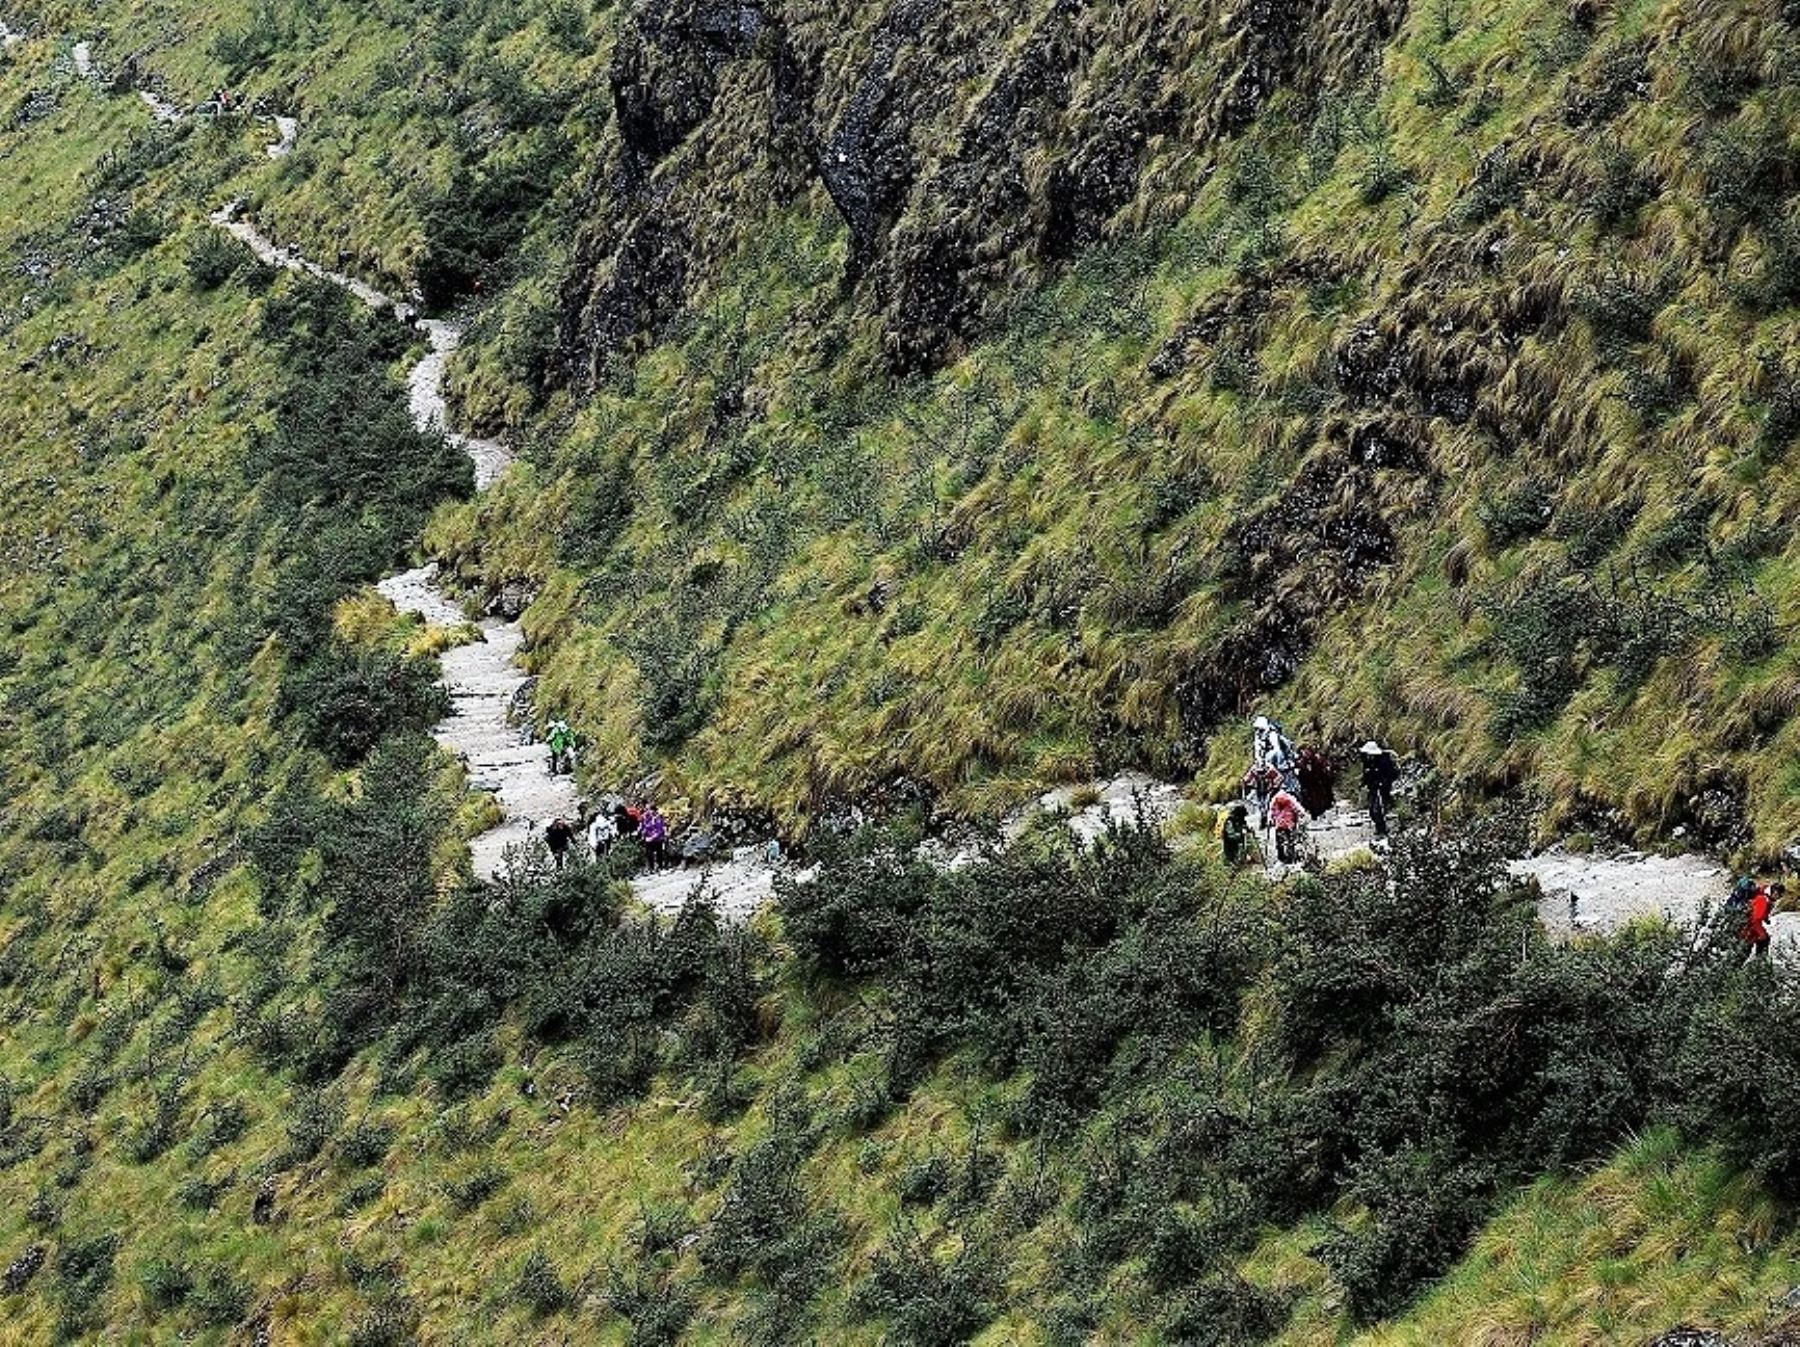 Alcaldes de cuatro distritos de Cusco proponen poner en valor el camino inca que une Machu Picchu con sitios arqueológicos como Choquequirao, Espíritu Pampa y otros atractivos turísticos. ANDINA/Archivo